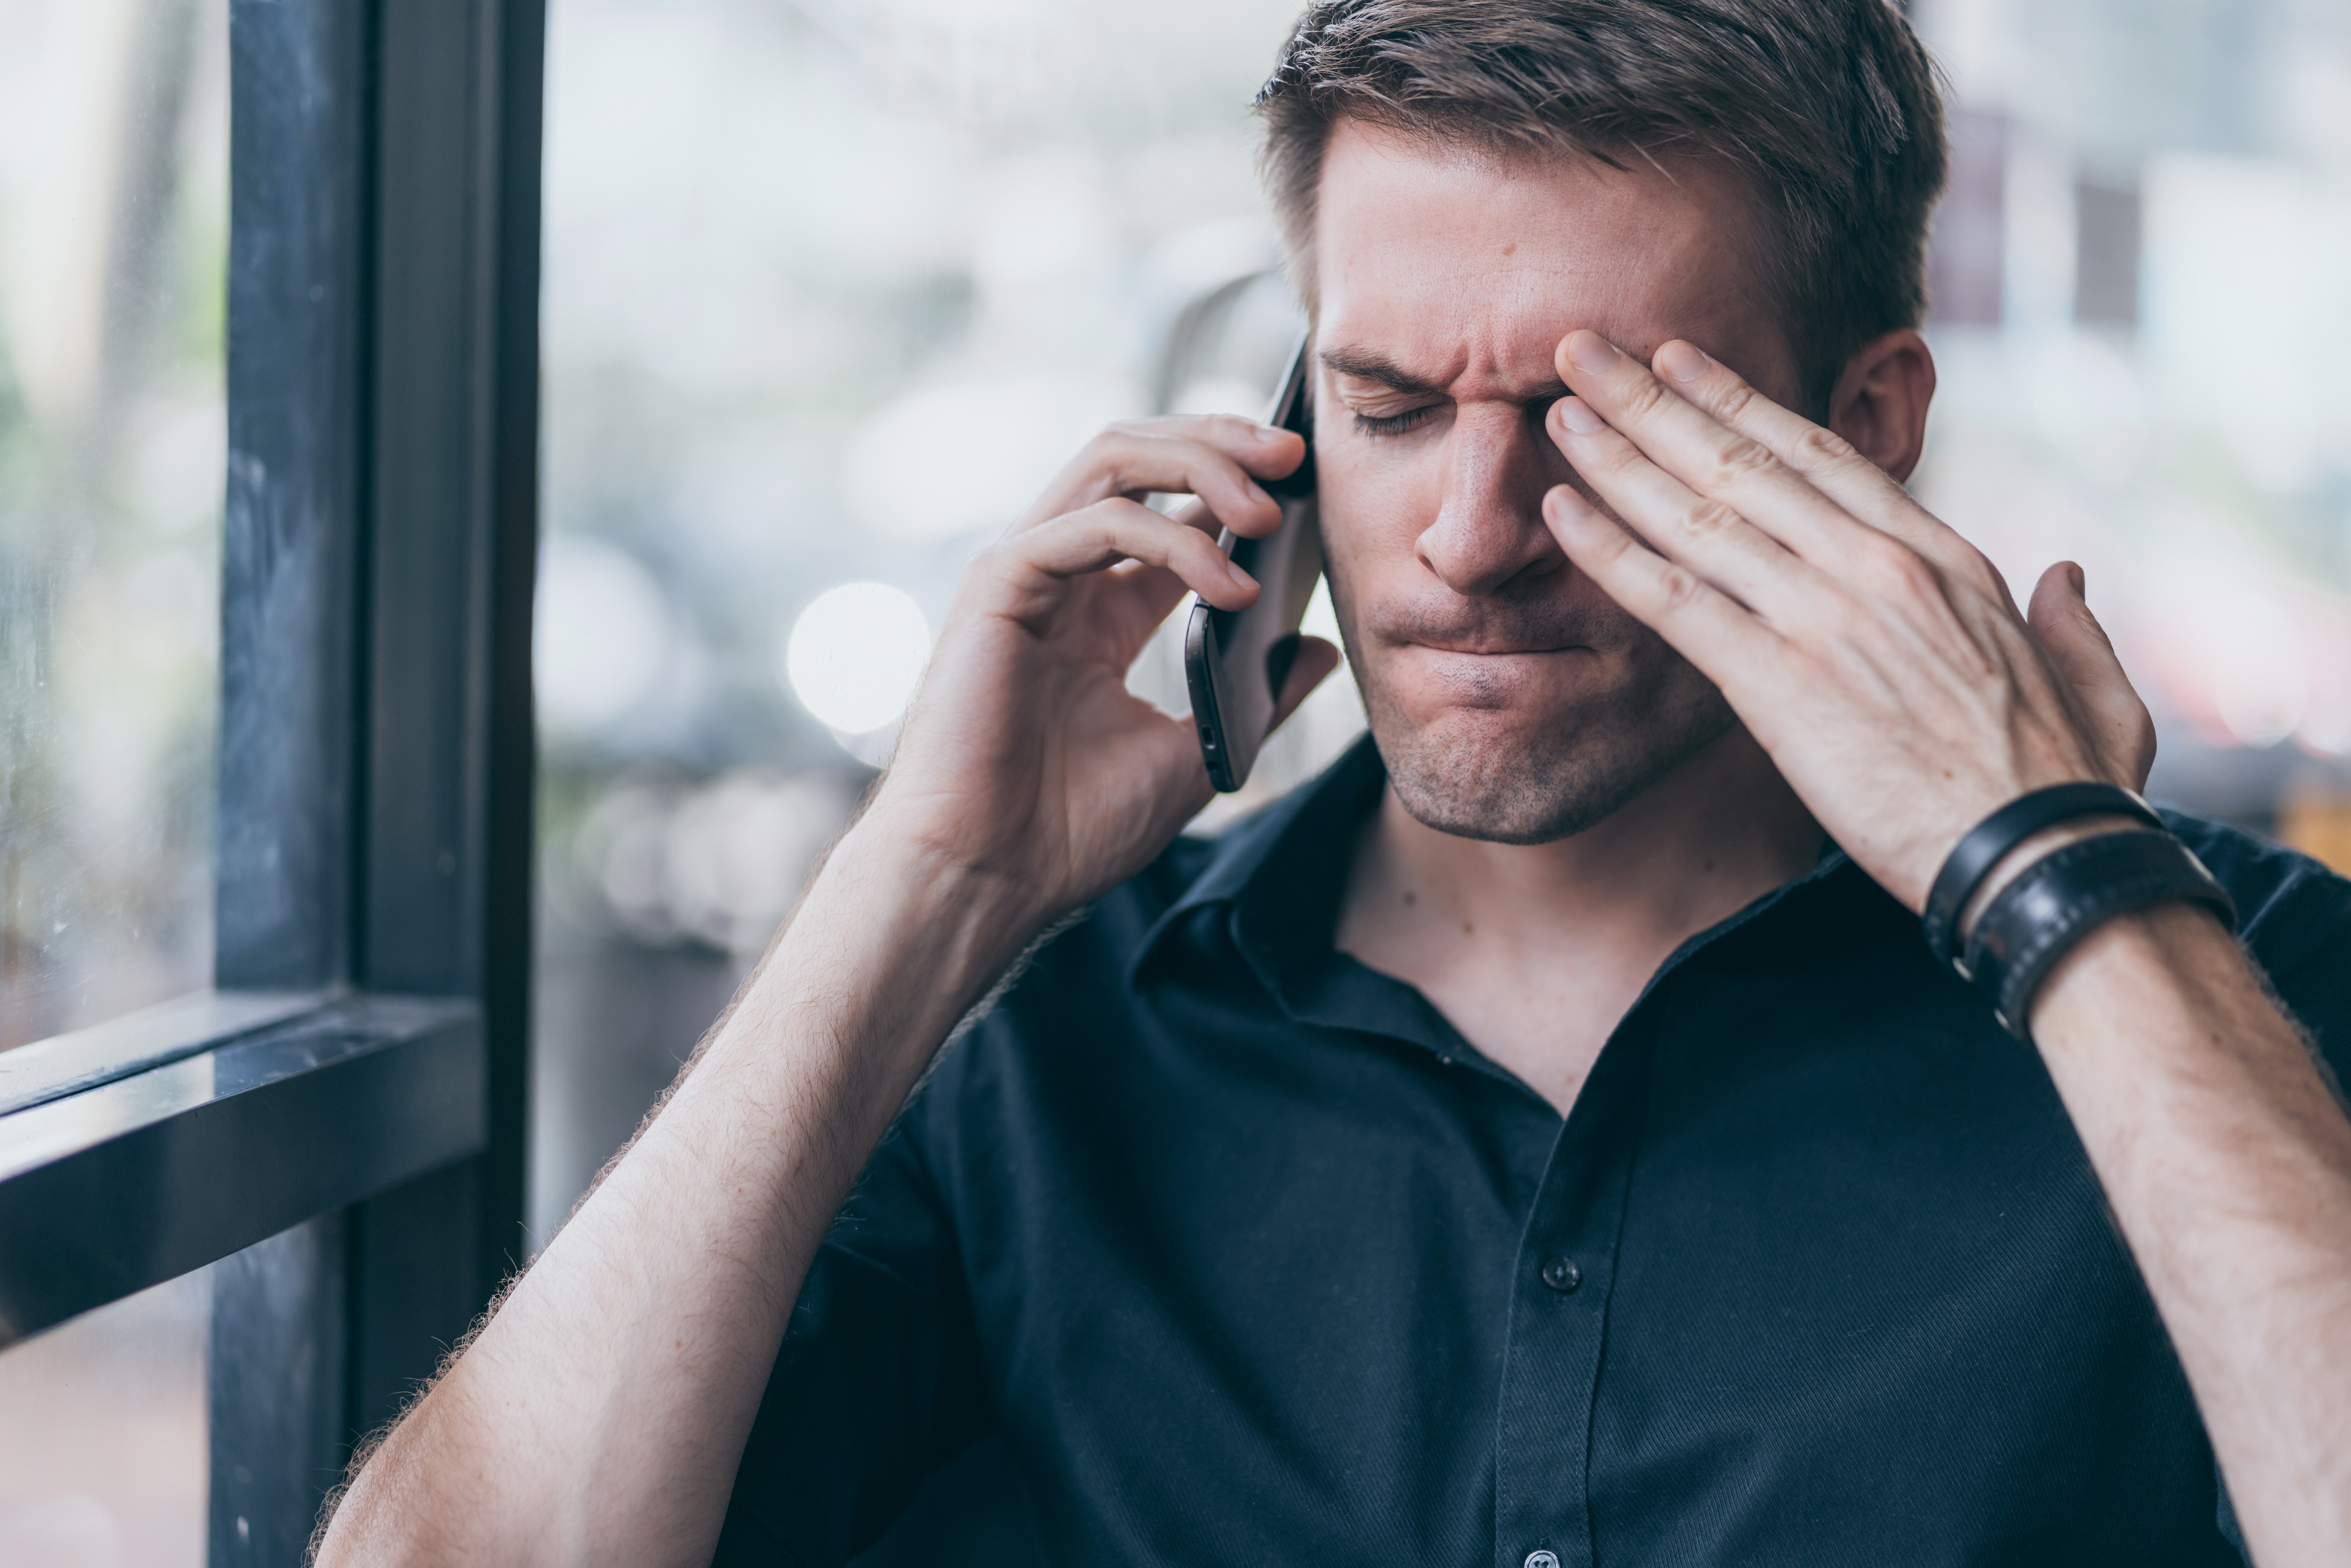 Un homme stressé qui parle au téléphone | Source : Shutterstock